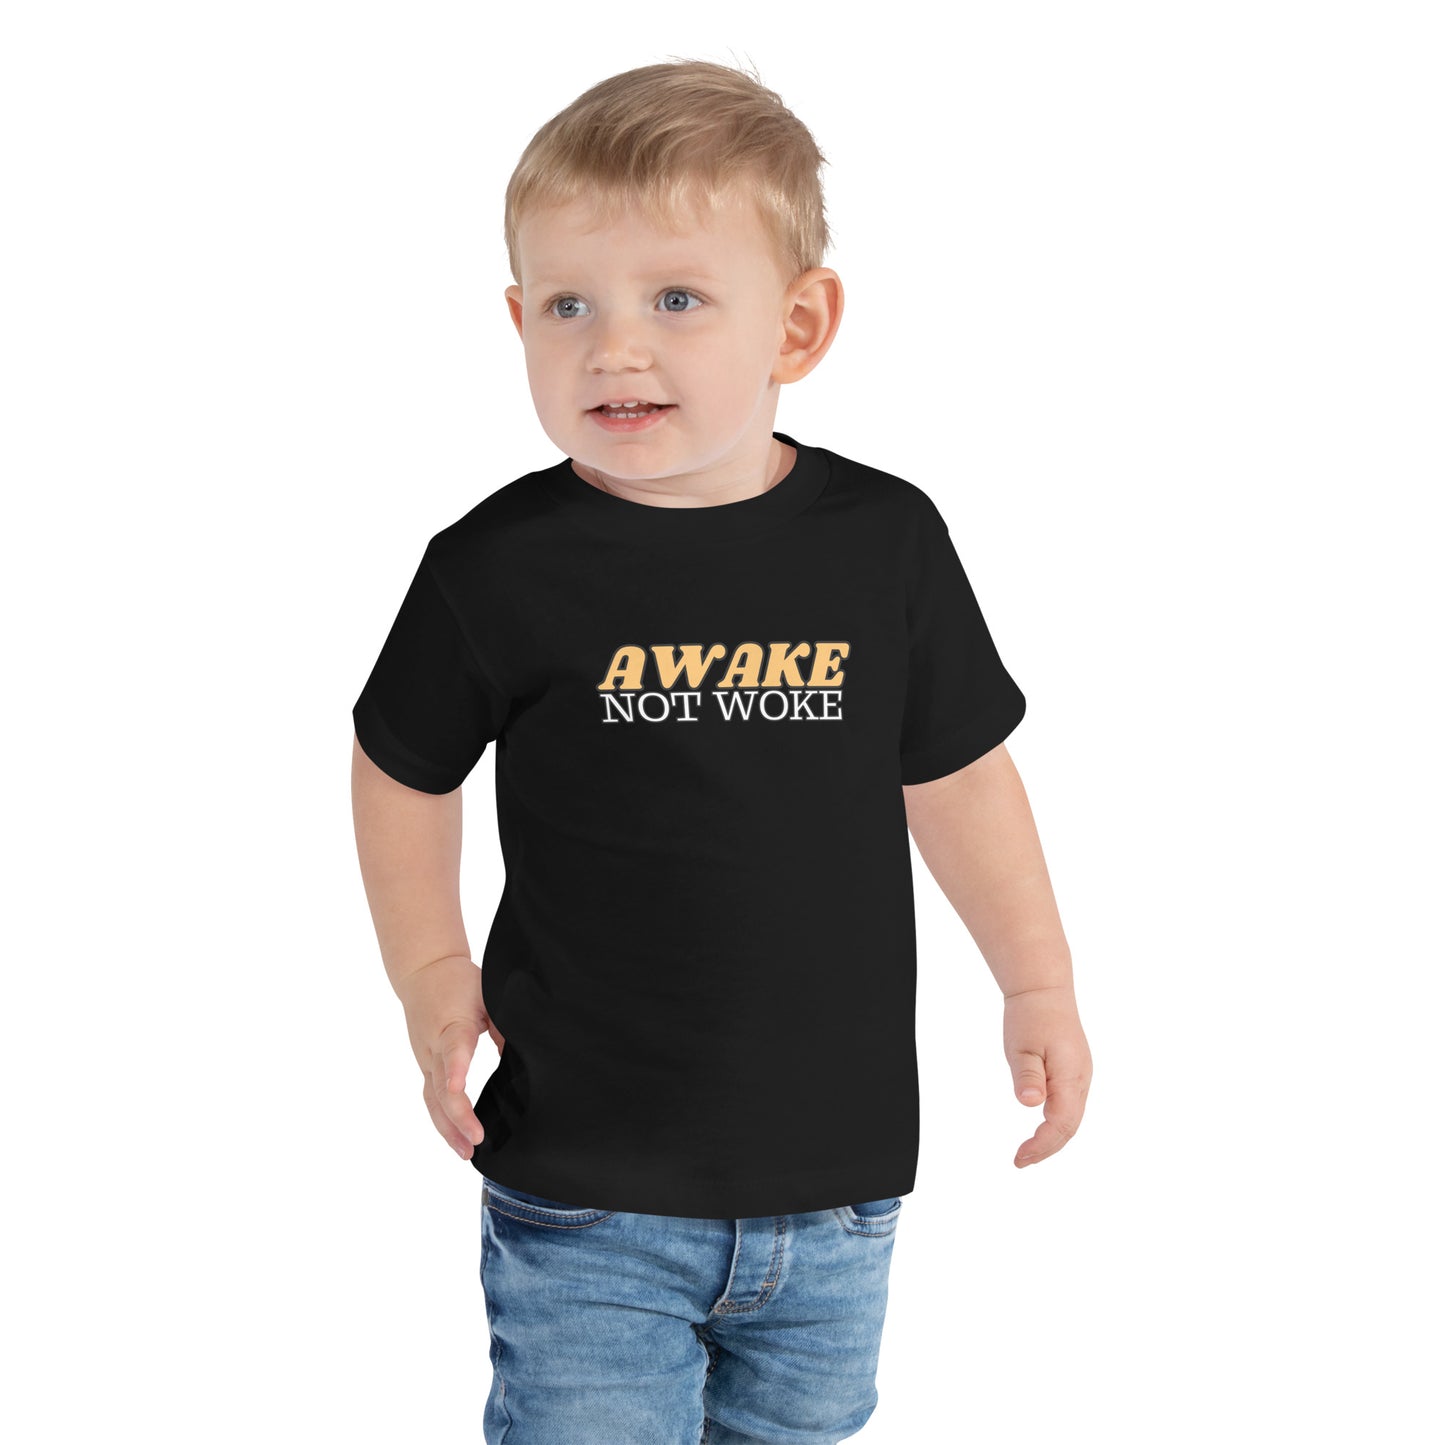 Awake Not Woke T-Shirt for Toddlers